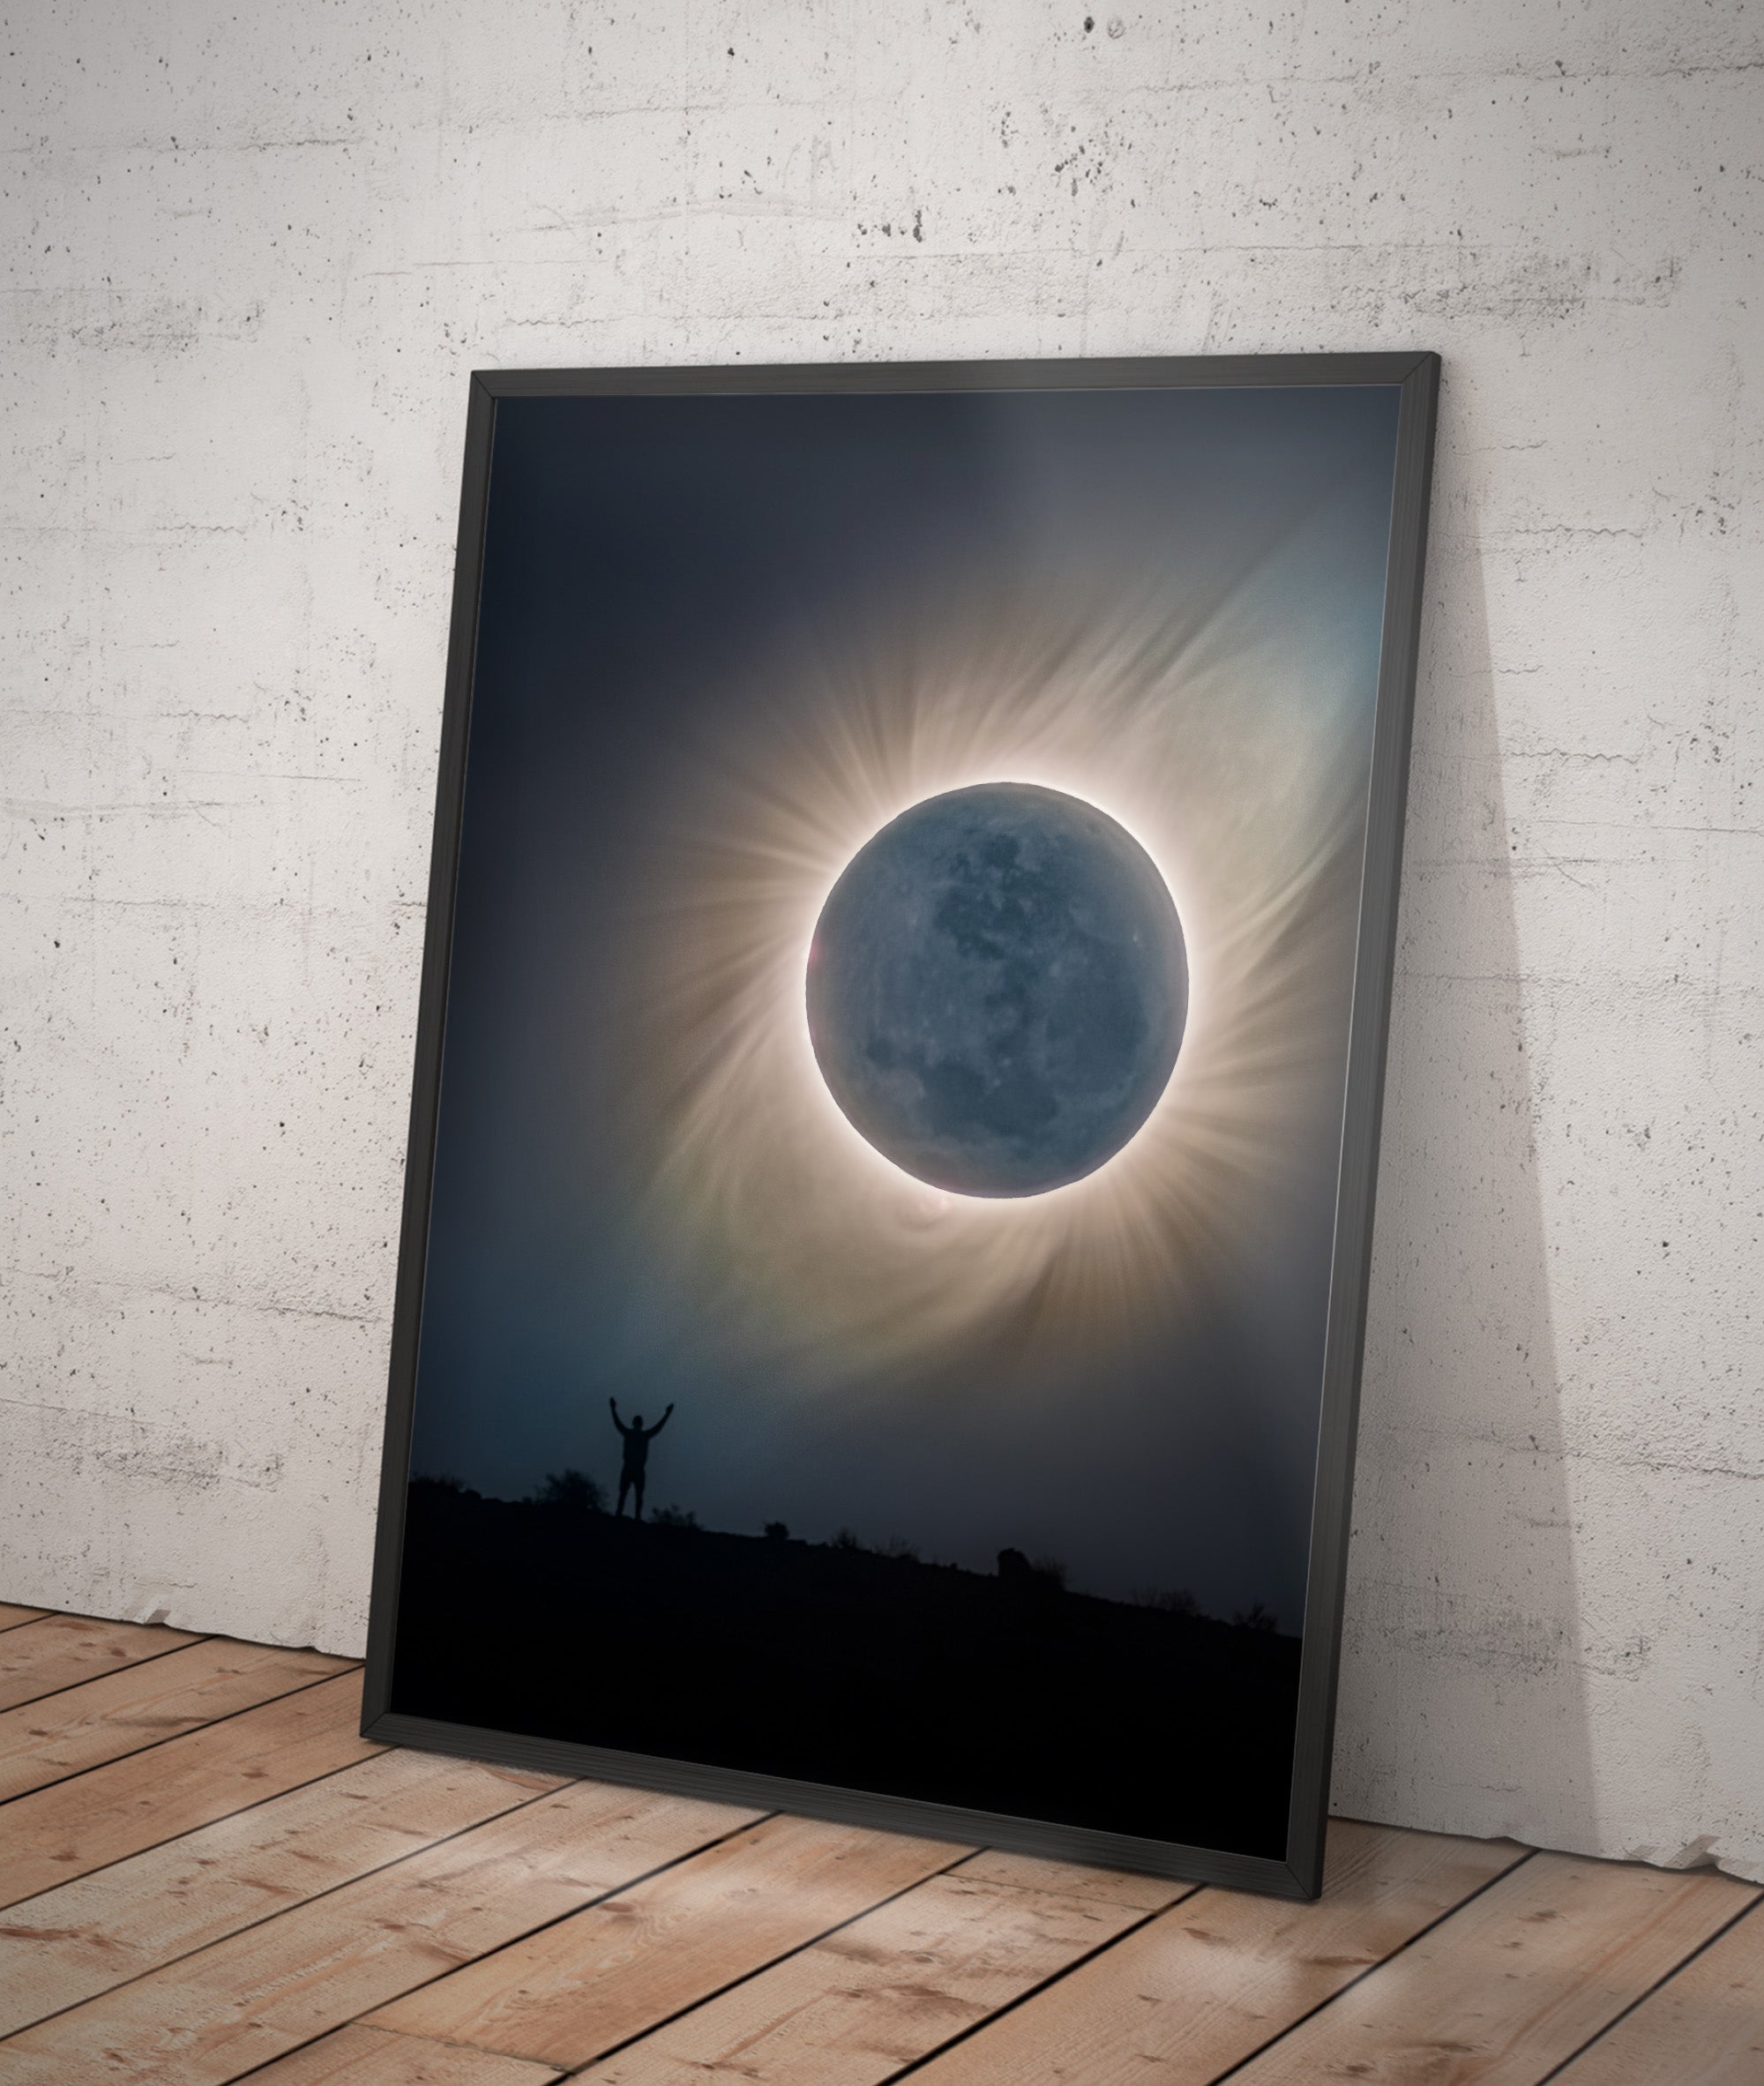 Człowiek, Księżyc i Korona Słońca - Całkowite zaćmienie Słońca, 2 lipca 2019, Chile